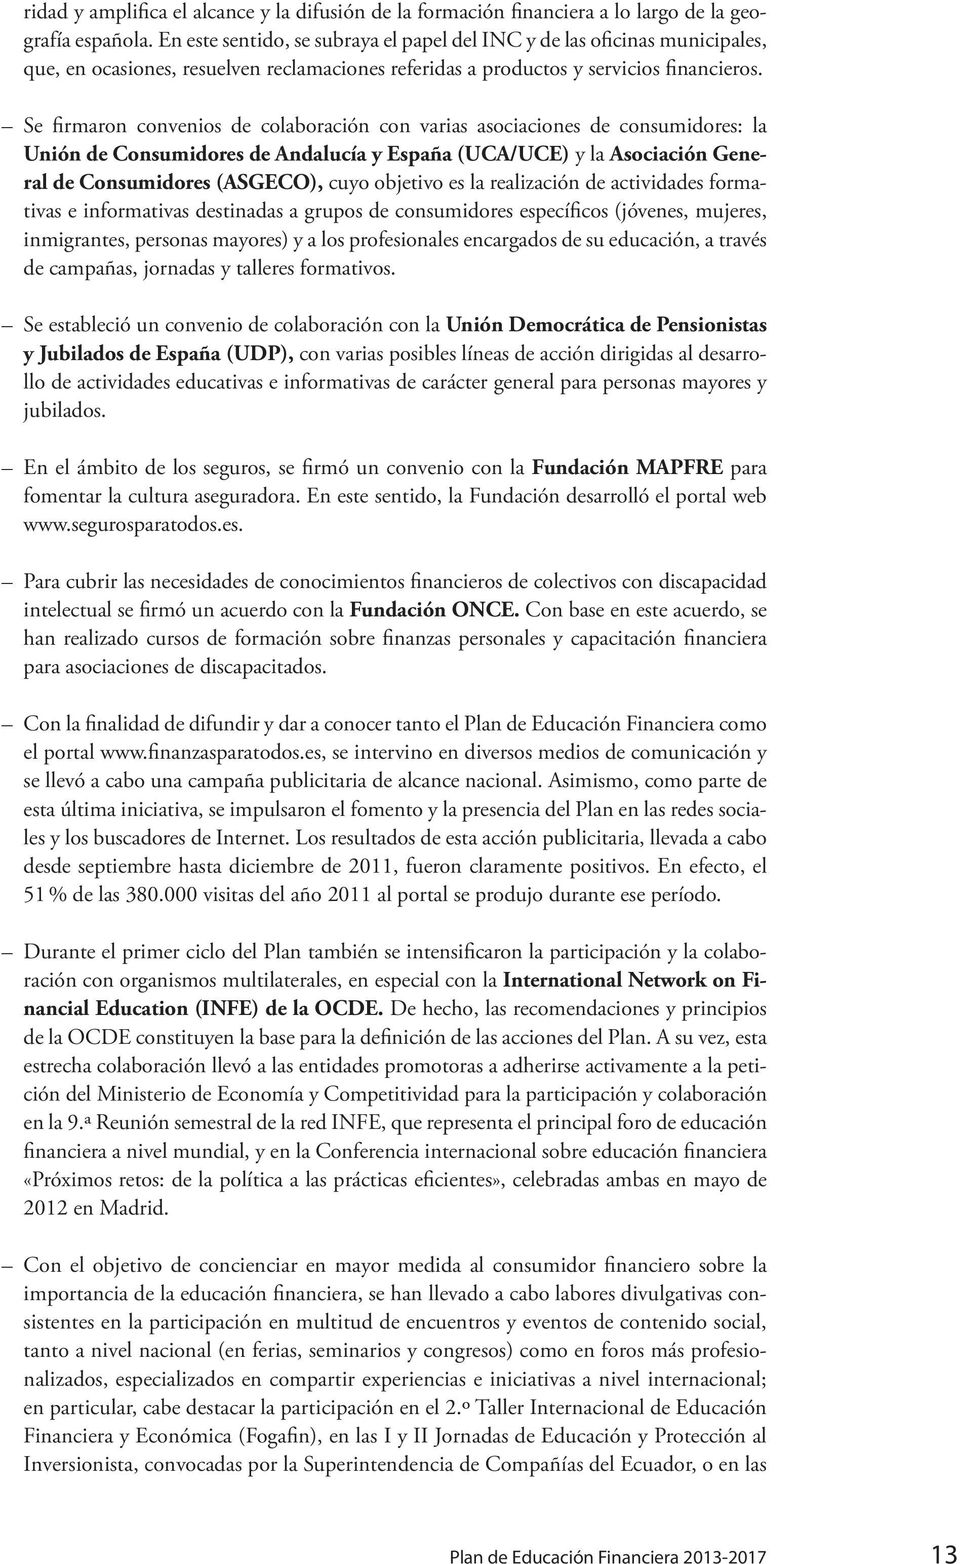 Se firmaron convenios de colaboración con varias asociaciones de consumidores: la Unión de Consumidores de Andalucía y España (UCA/UCE) y la Asociación General de Consumidores (ASGECO), cuyo objetivo